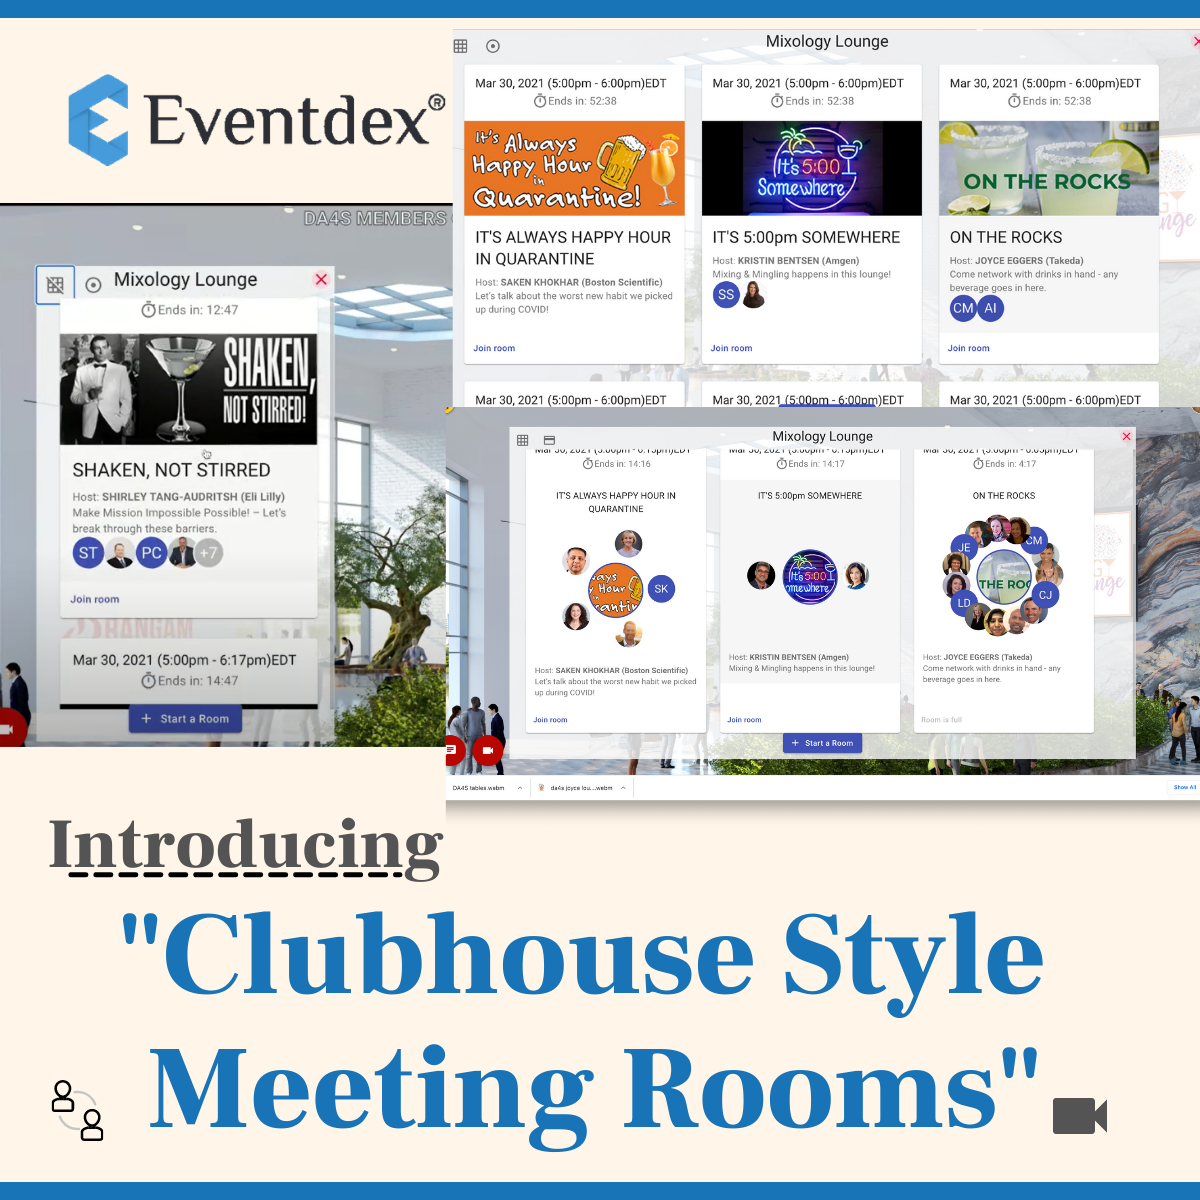 Eventdex lanza salas de reuniones estilo casa club para eventos en línea